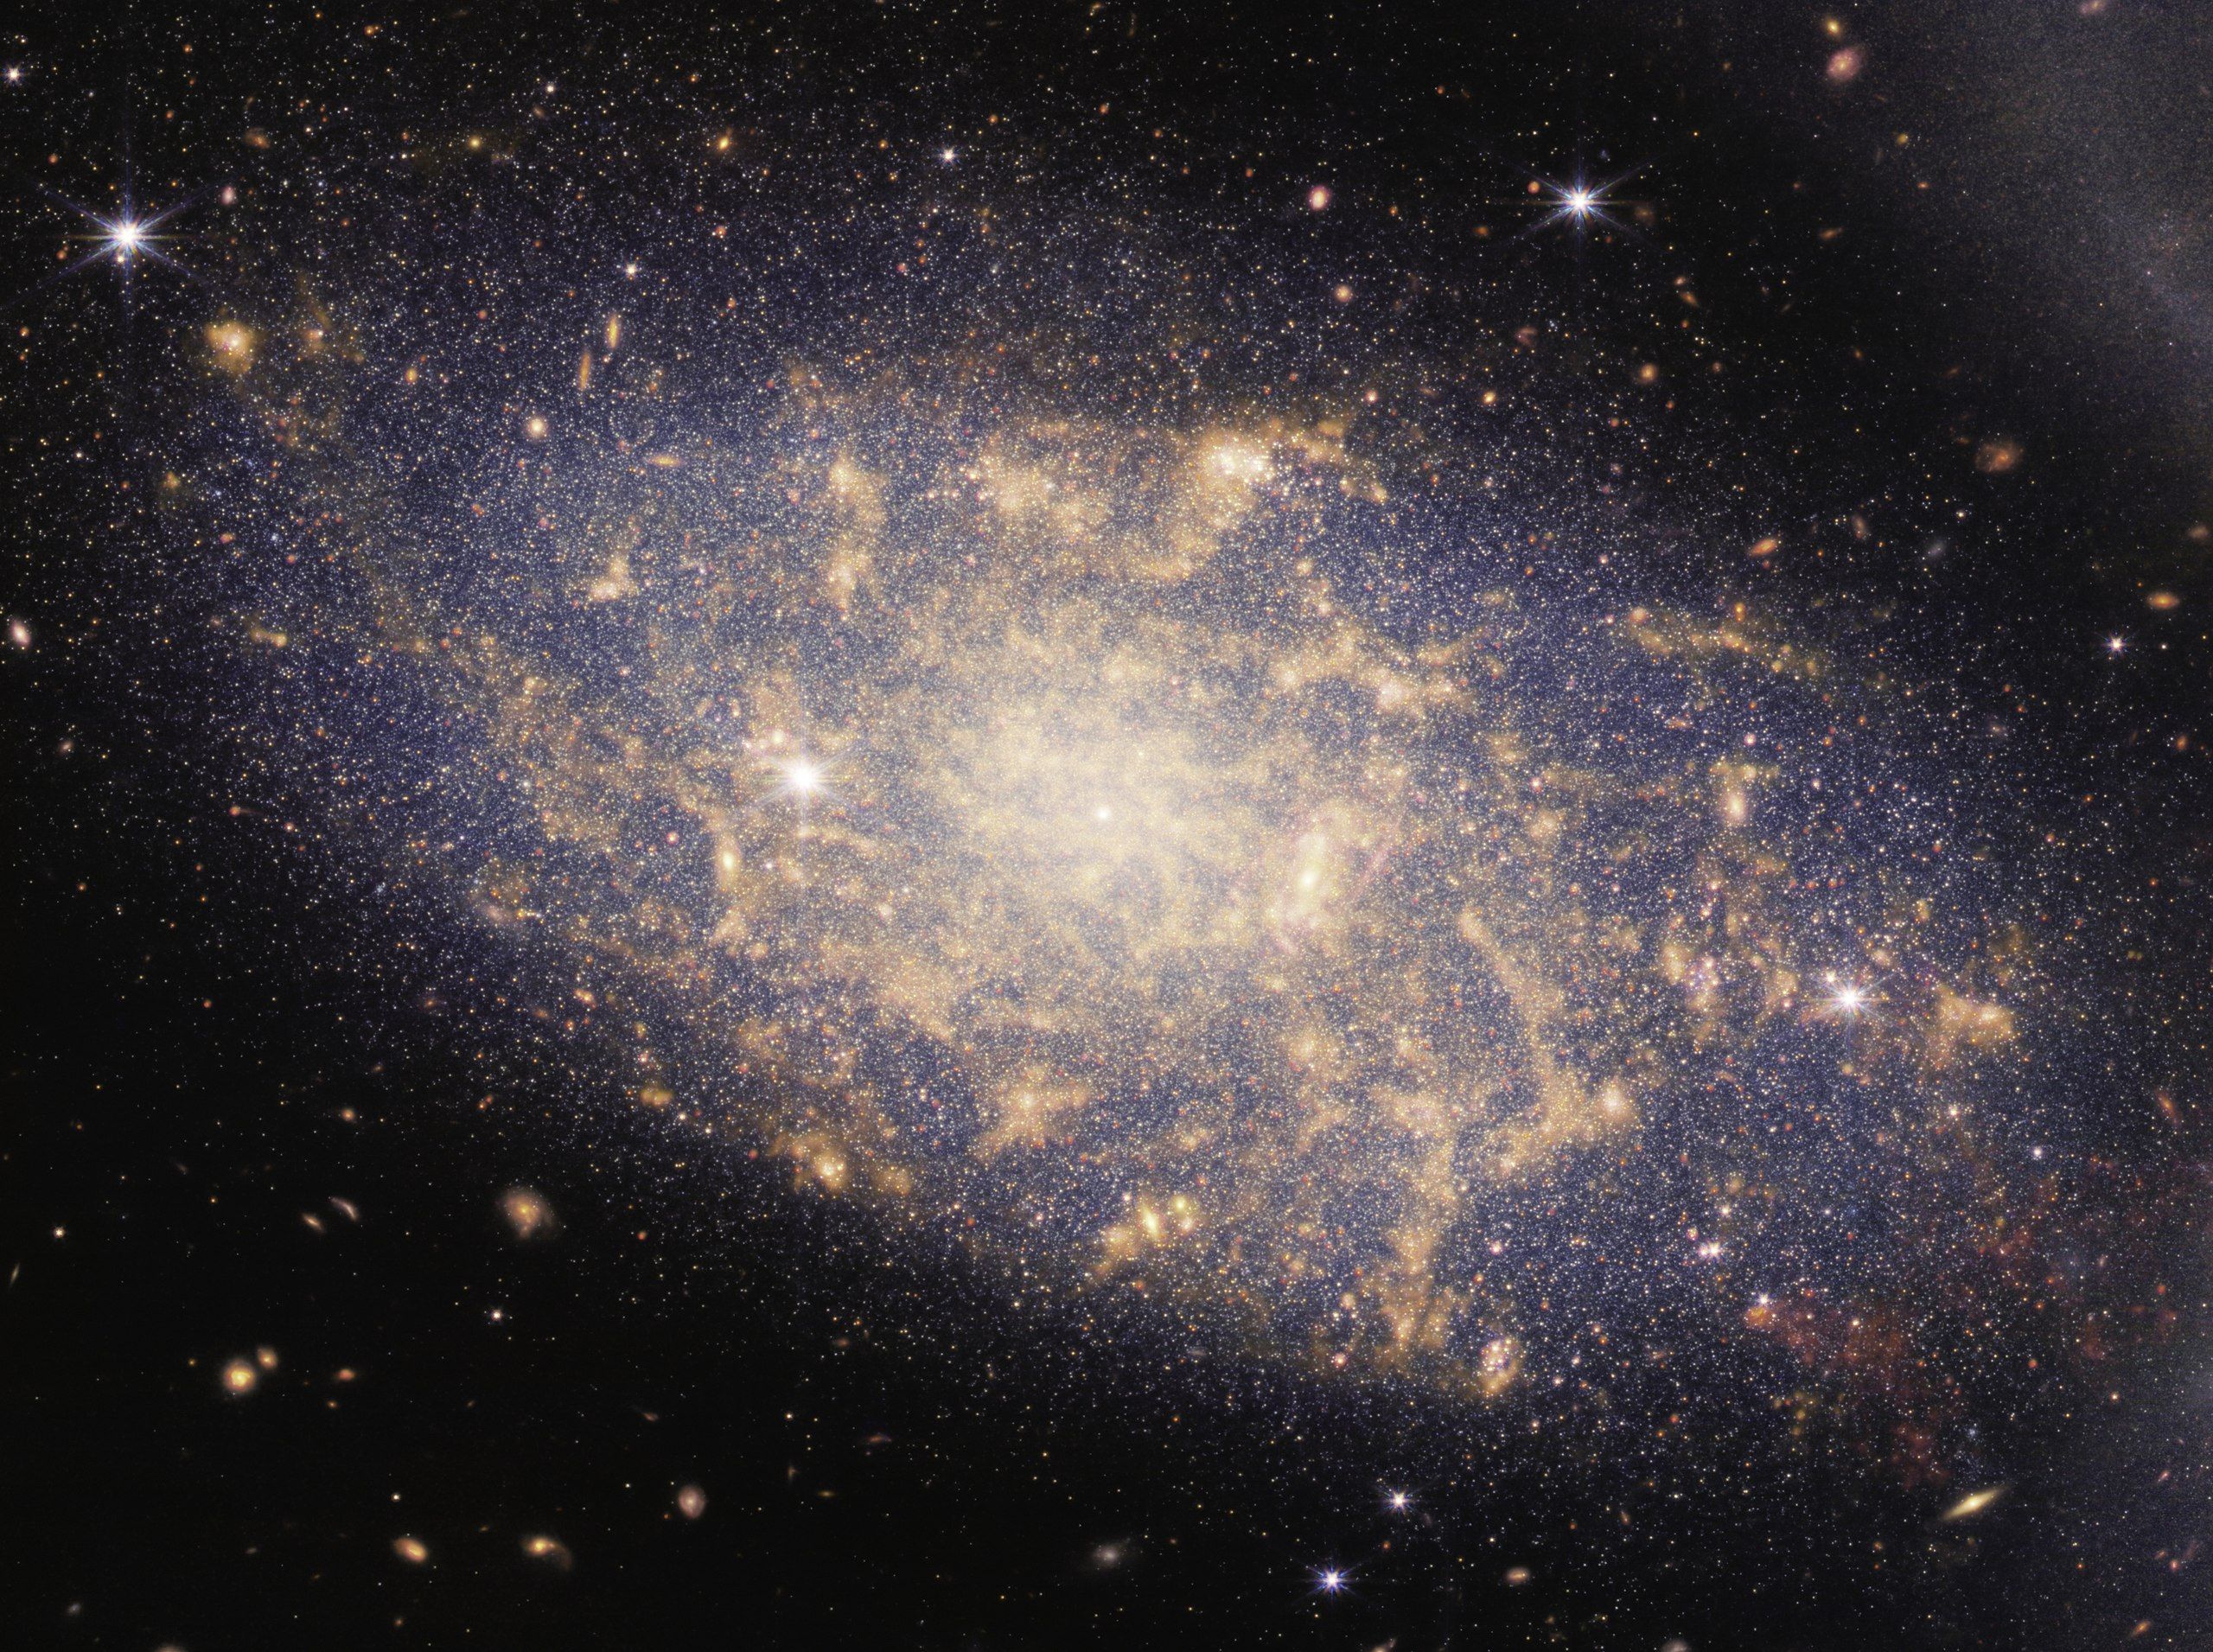 Groupe de galaxies photographié par le téléescope James Webb - Domaine public https://webbtelescope.org/contents/media/images/2022/034/01G7DA5ADA2WDSK1JJPQ0PTG4A